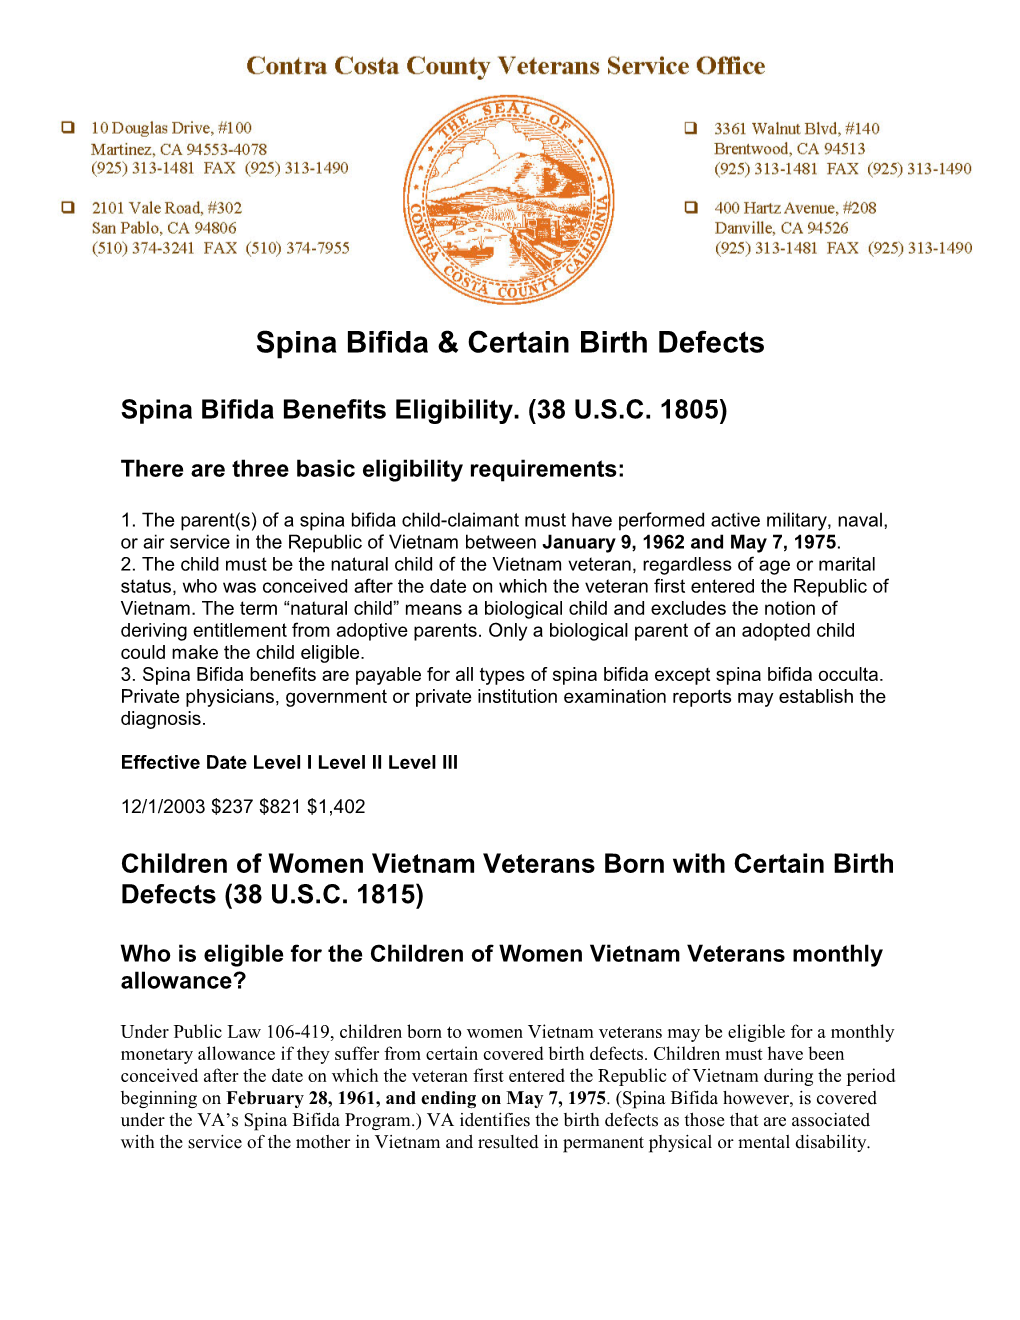 Spina Bifida & Certain Birth Defects